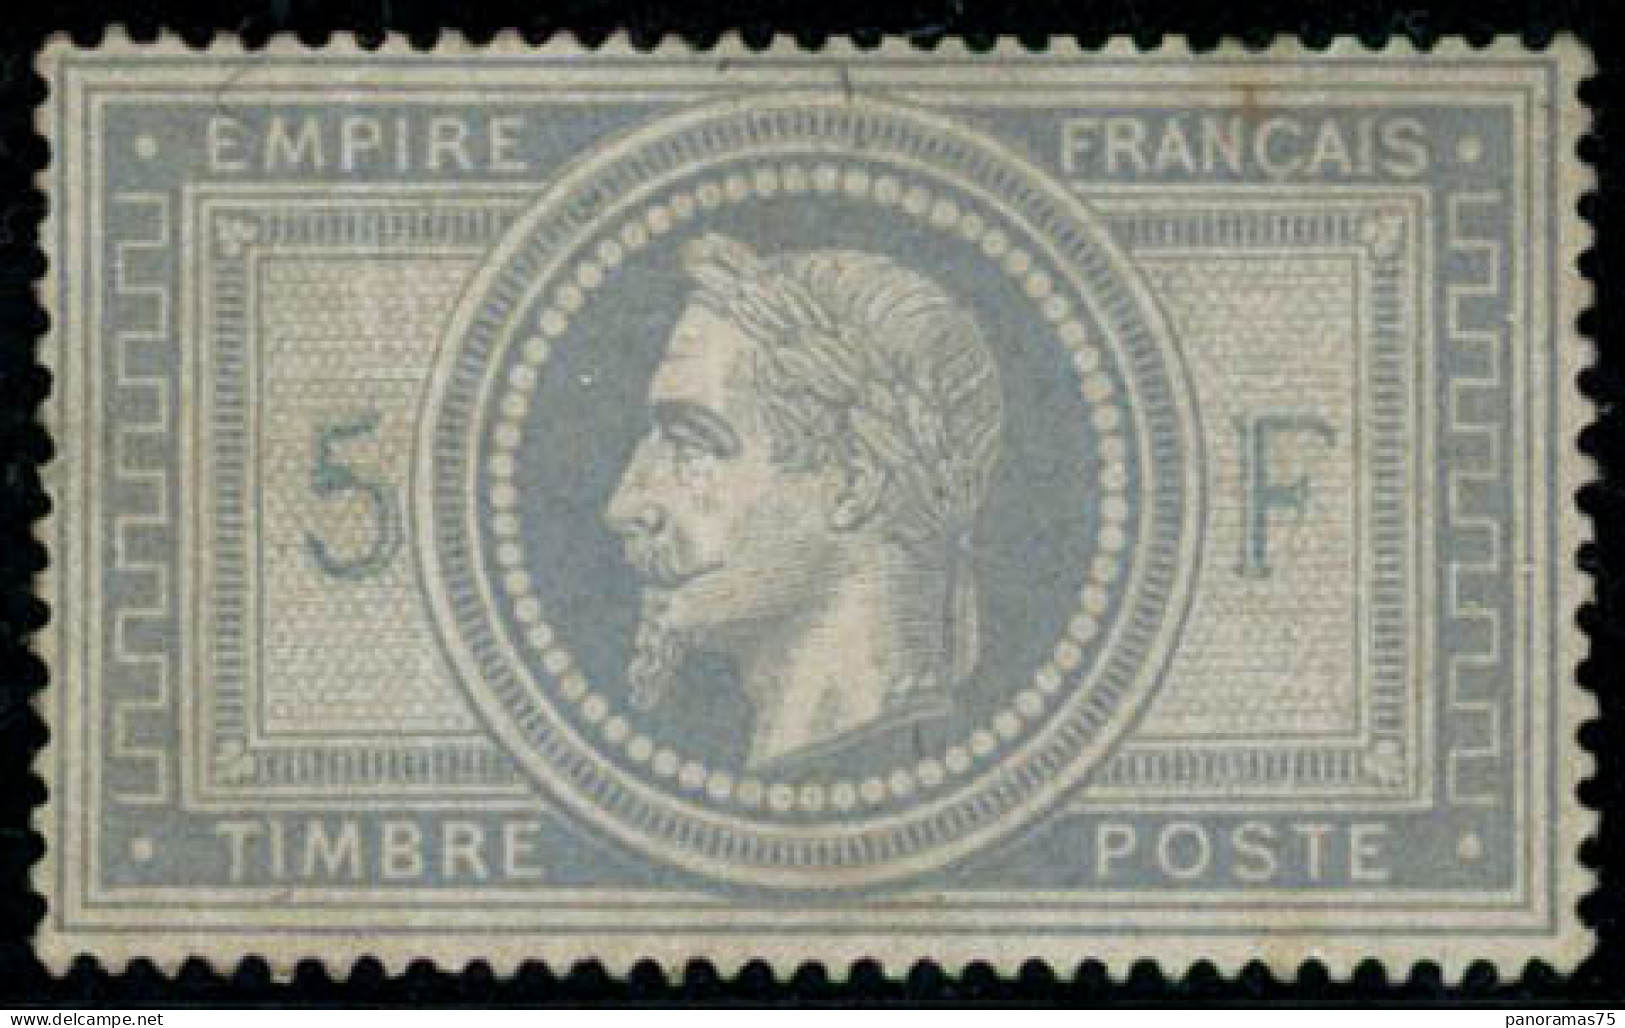 ** N°33 5F Empire, Quelques Froissures De Gomme, Qualité Standard - B - 1863-1870 Napoléon III Lauré